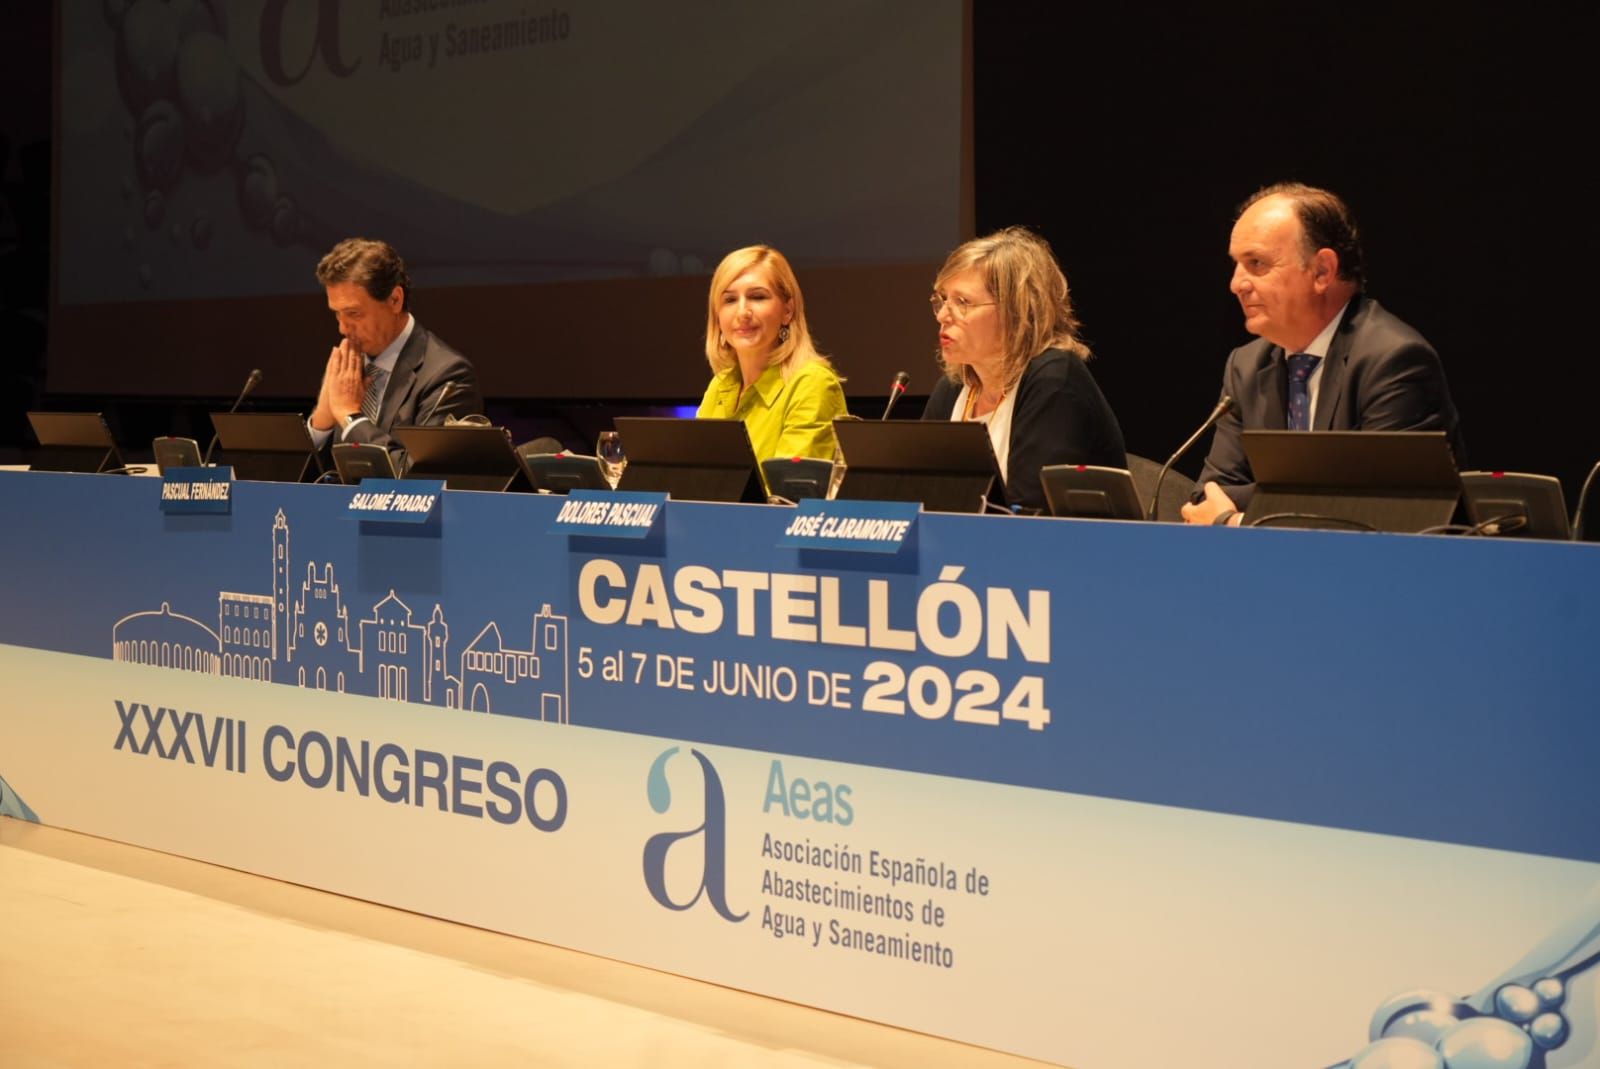 Clausura del XXXVII Congreso de AEAS en Castellón